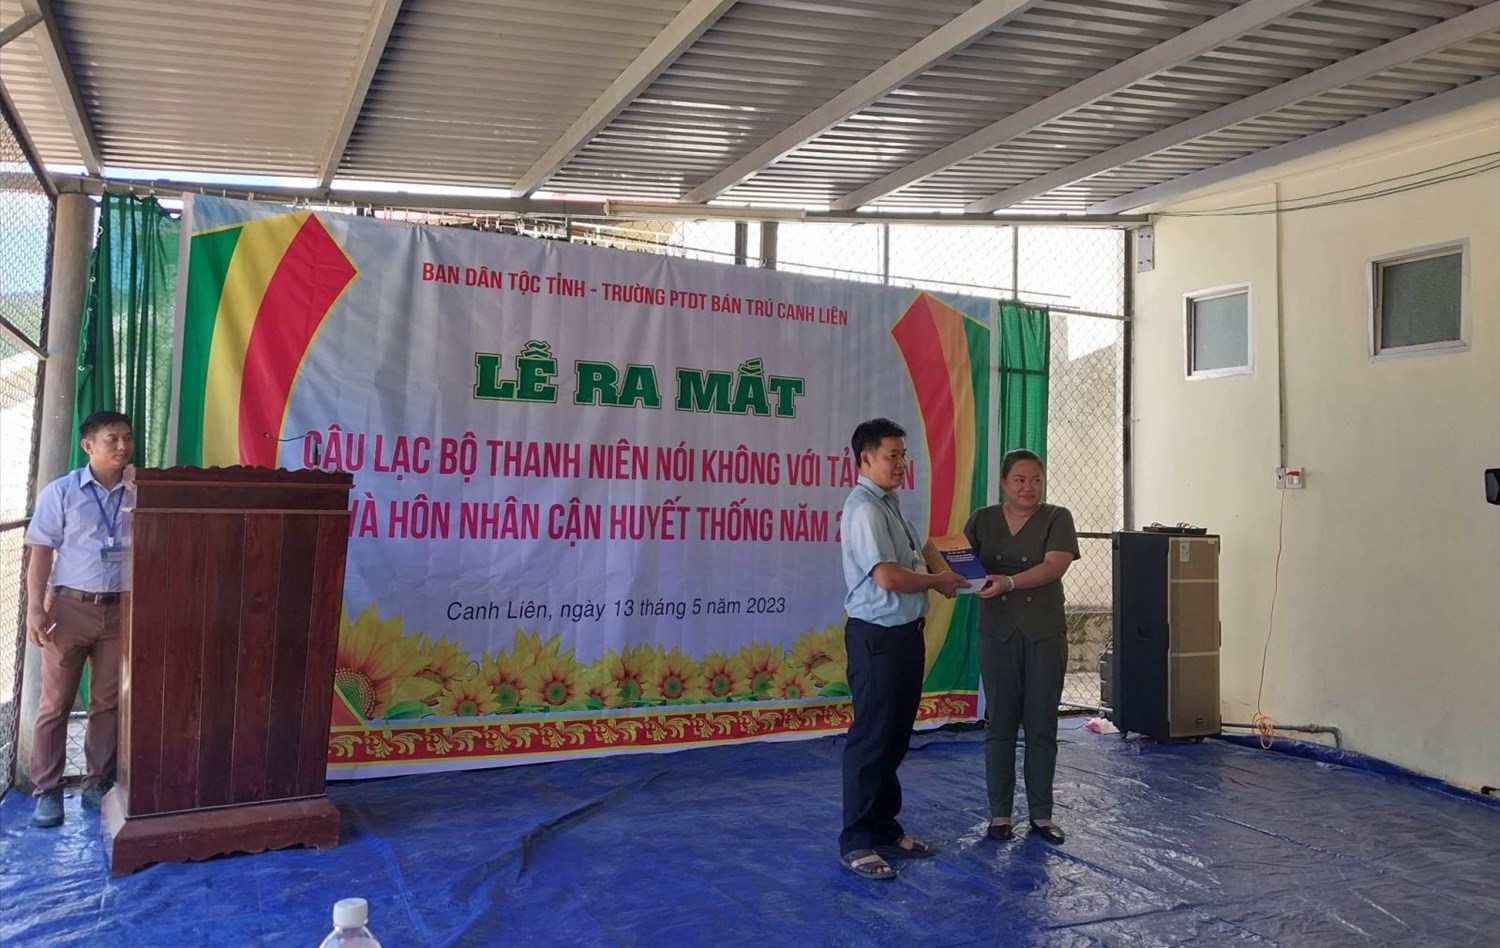  Ban Dân tộc tỉnh Bình Định trao 70 quyển sách hỏi đáp pháp luật về hôn nhân, tảo hôn và hôn nhân cận huyết thống trong vùng đồng bào DTTS và miền núi cho Trường THCS Bán Trú Canh Thuận.